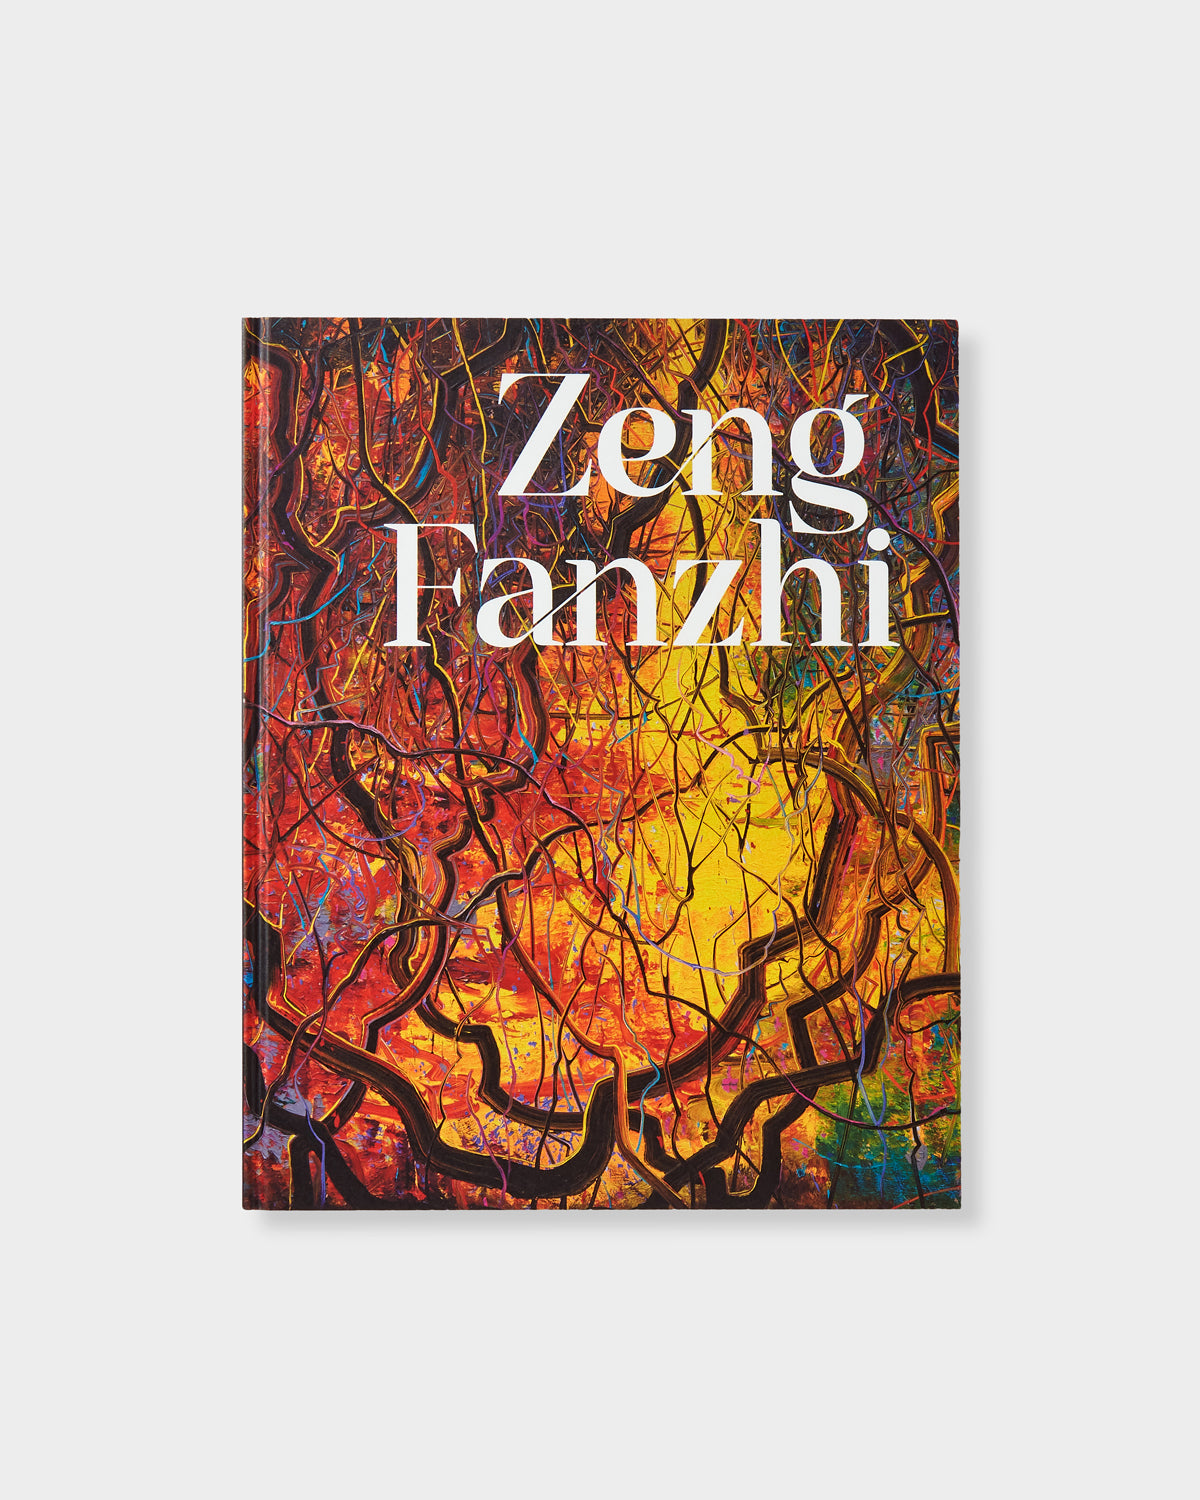 Zeng Fanzhi